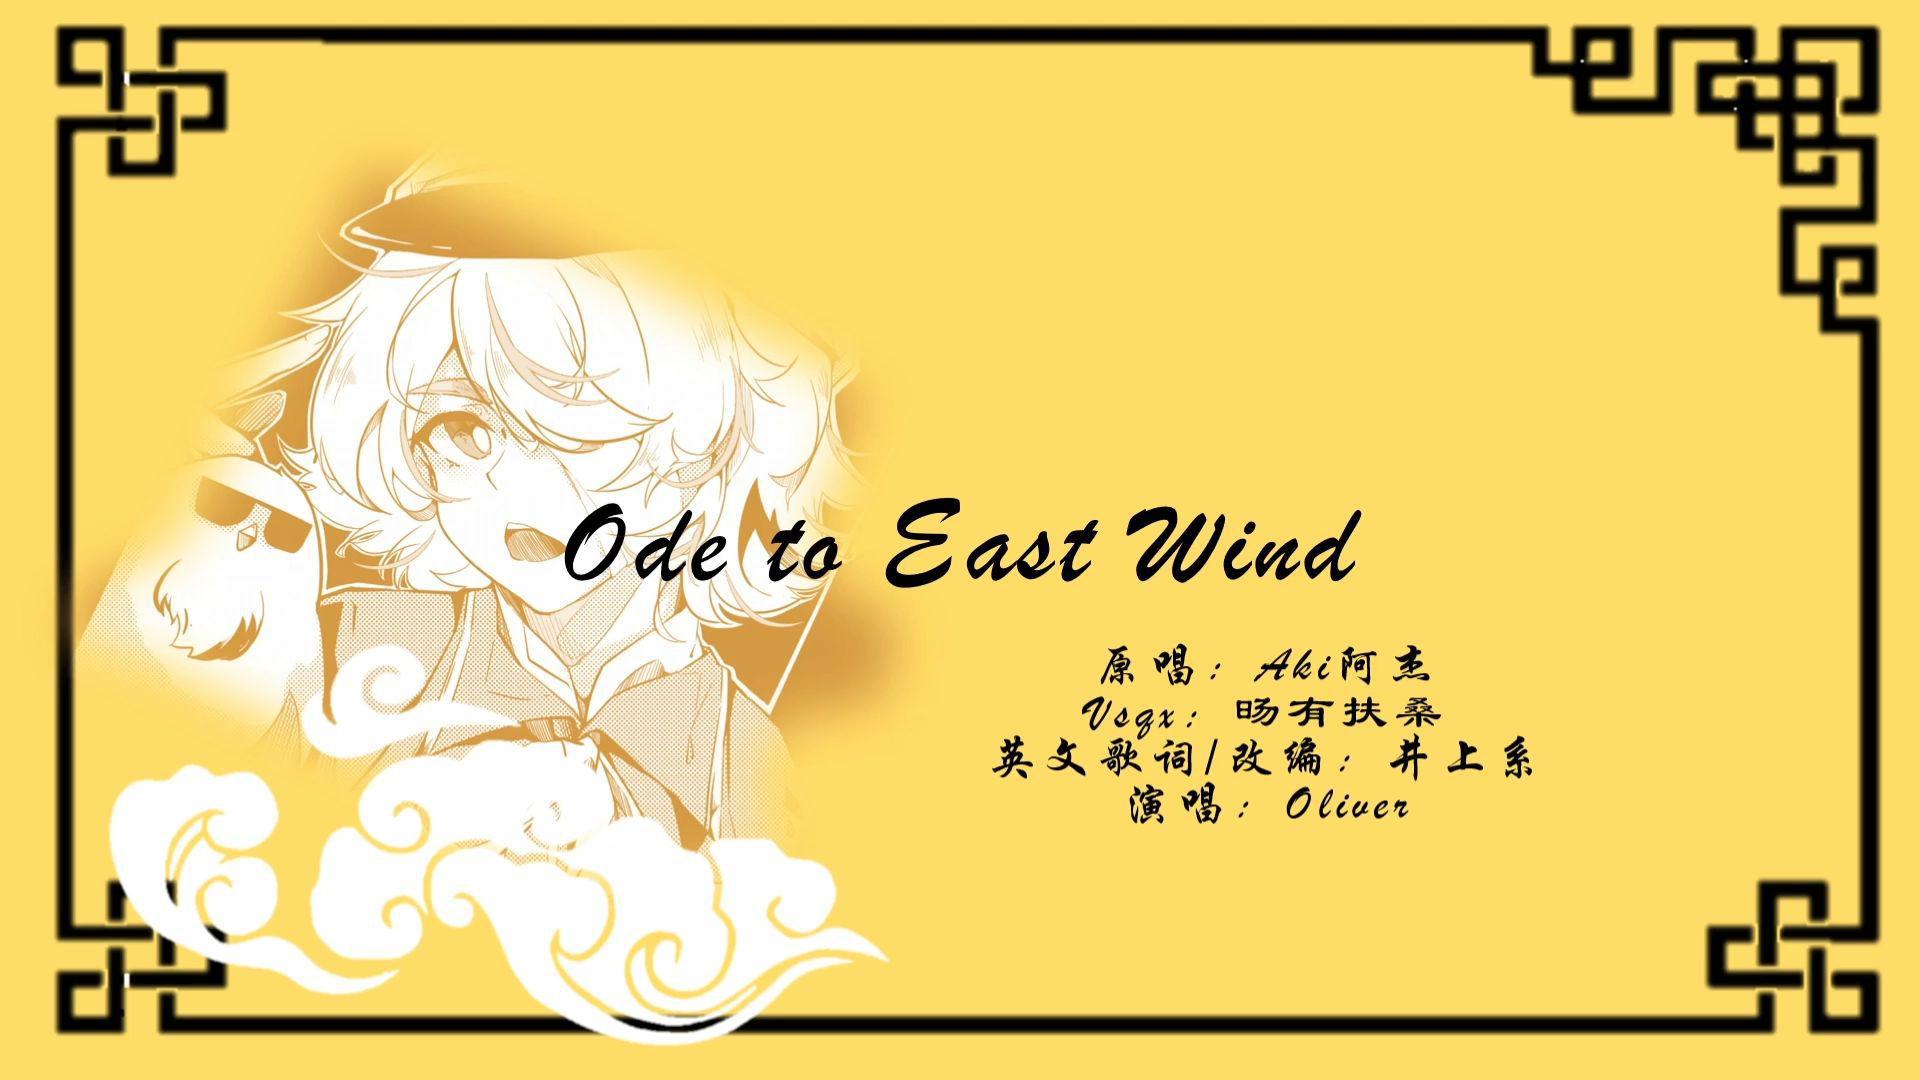 井上系 - Ode to East Wind